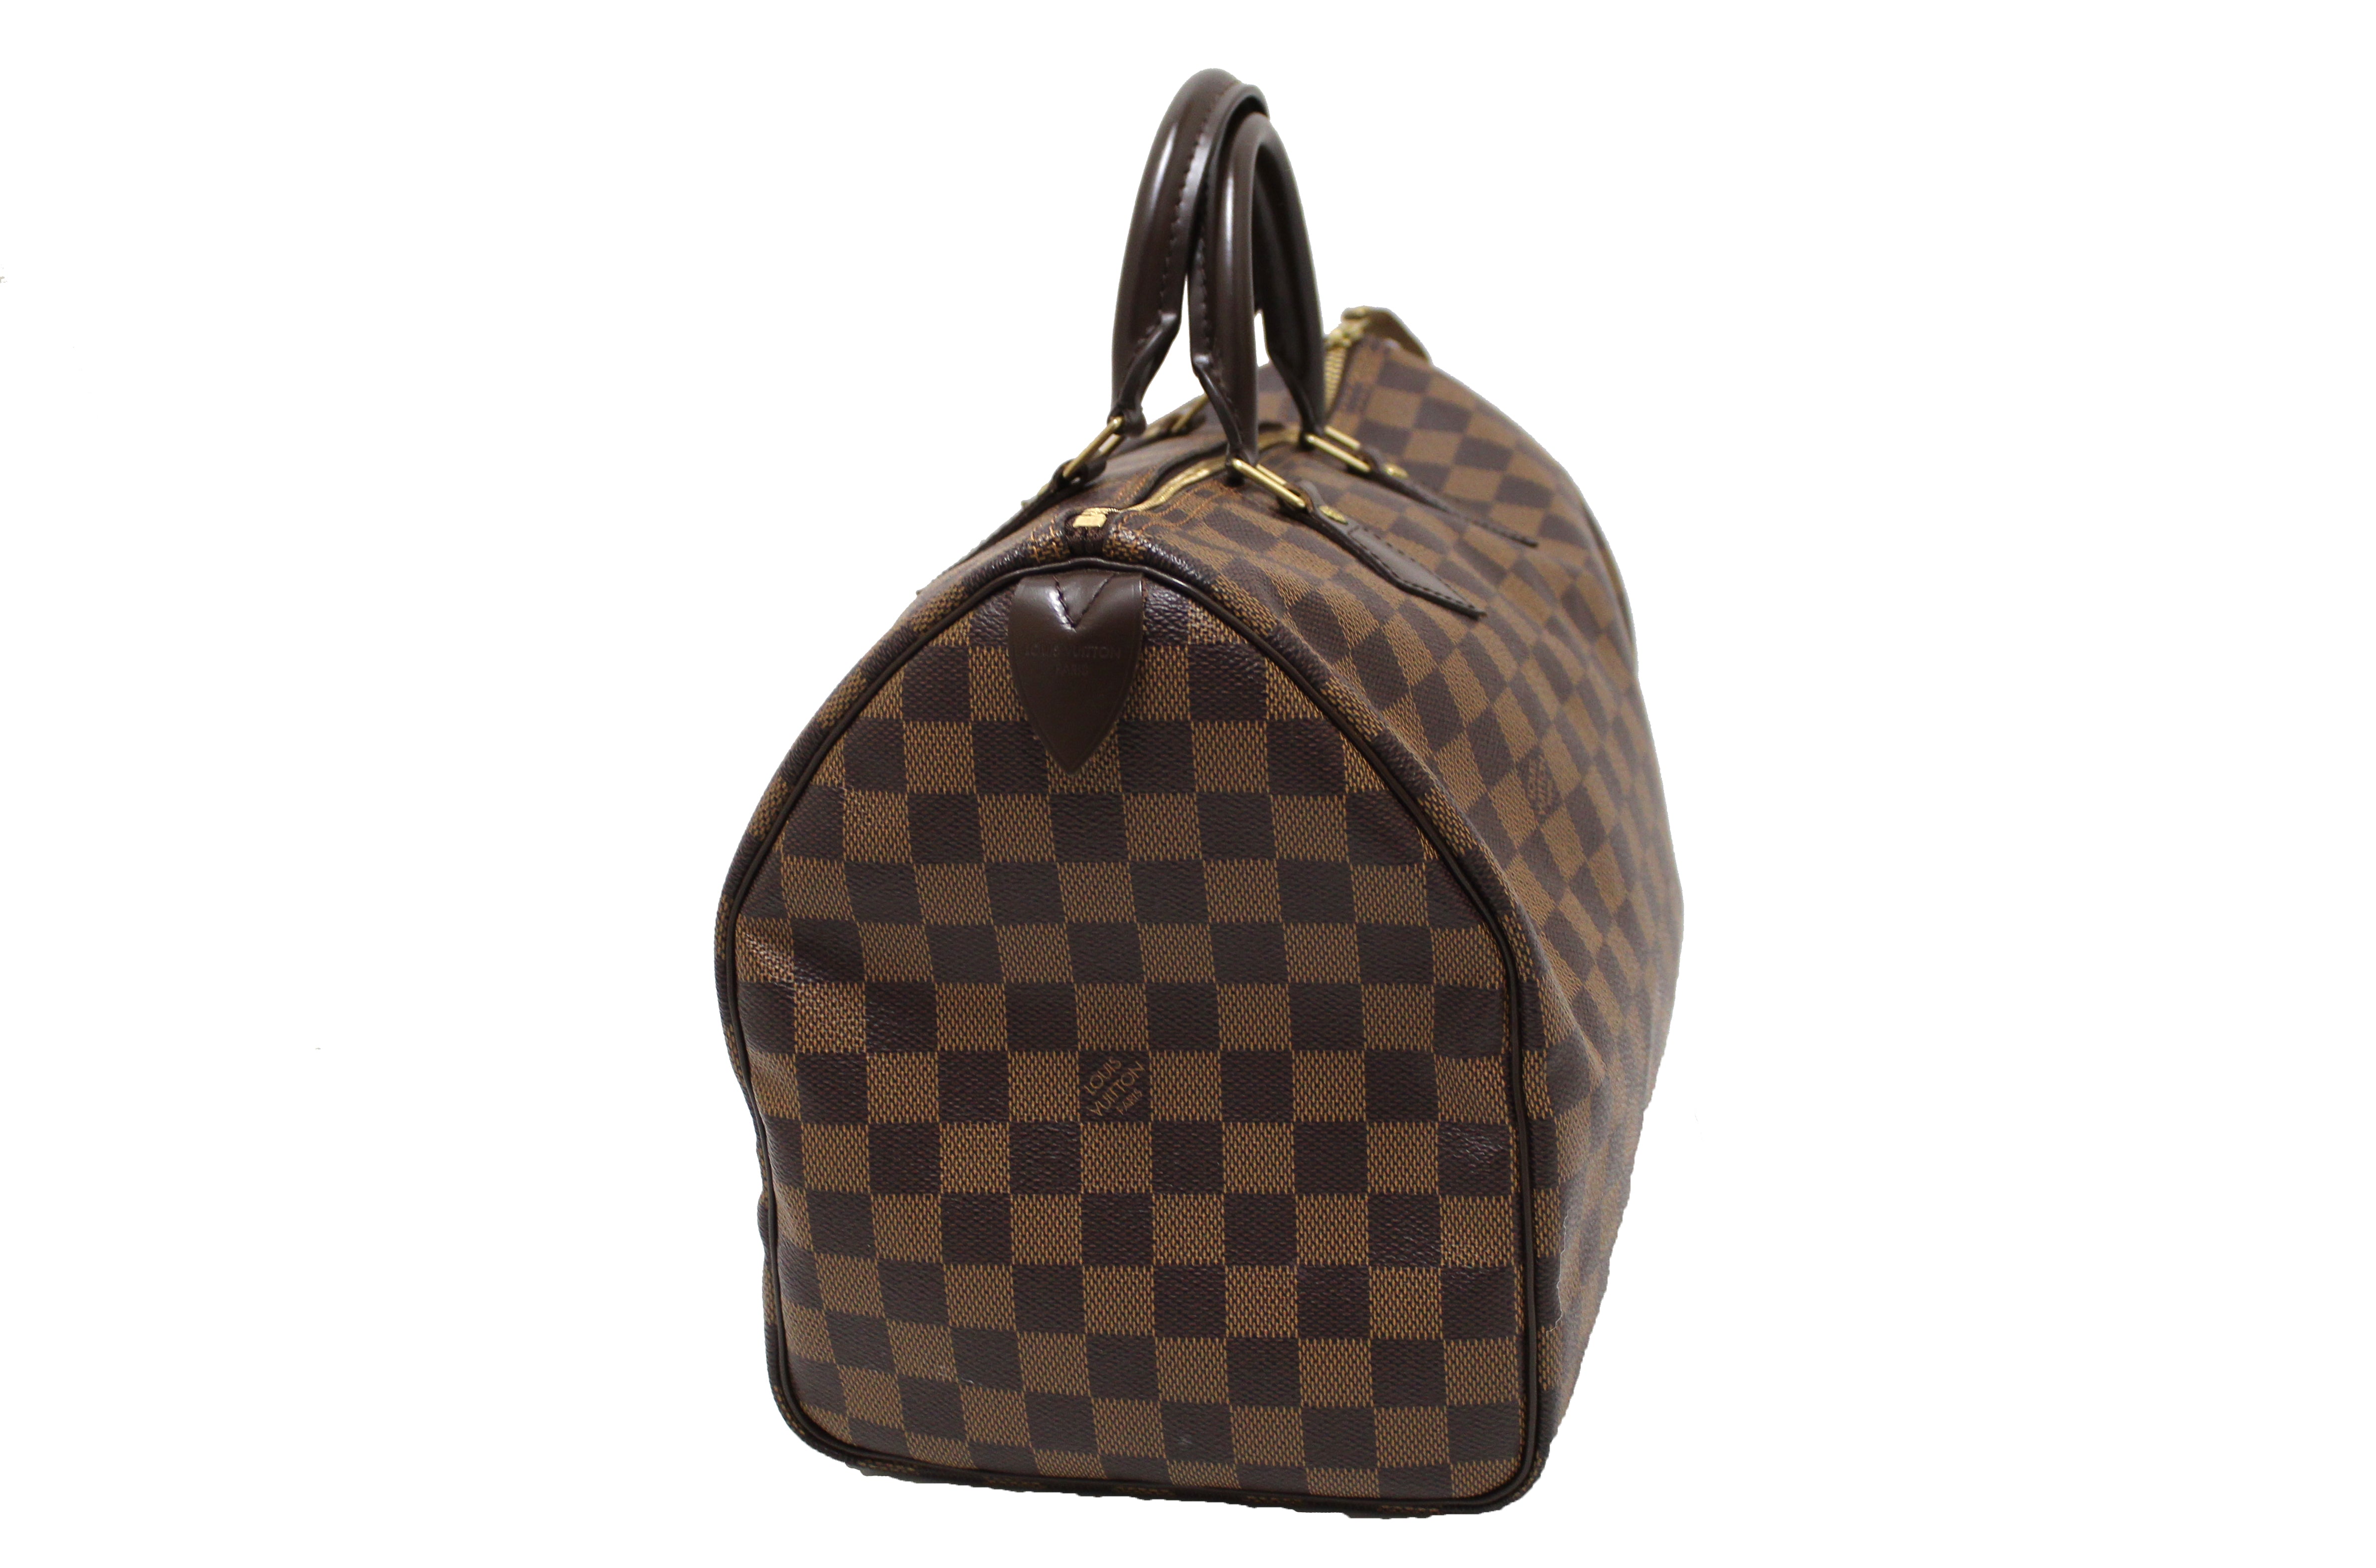 Authentic Louis Vuitton Damier Ebene Speedy 35 Handbag – Paris Station Shop